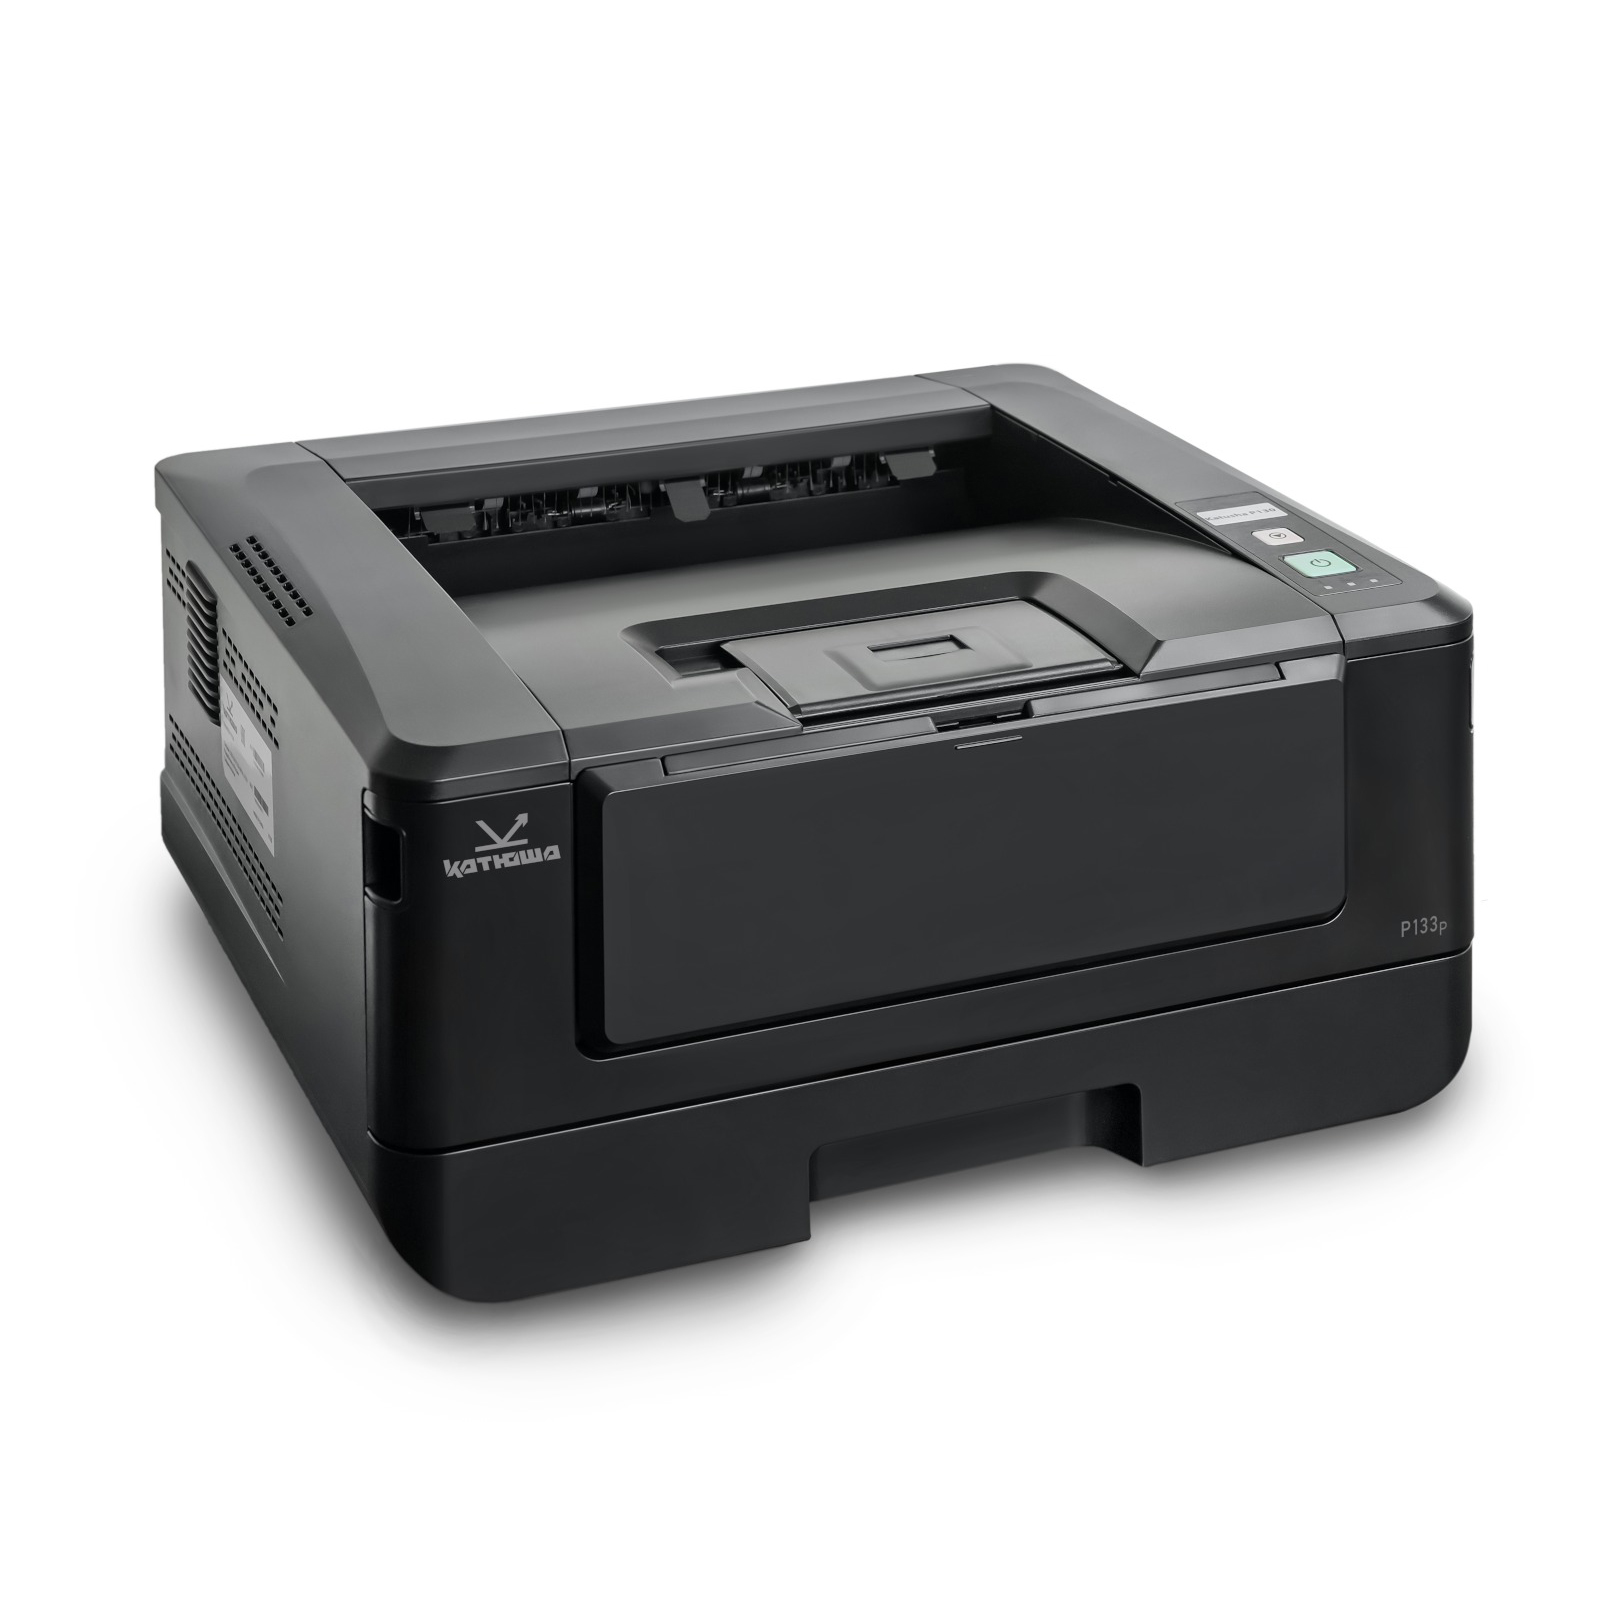 Принтер лазерный Катюша P133p, черно-белая печать, 33 стр/мин, 1200 dpi, 1 ГБ RAM, USB, Ethernet (Сделано в России)